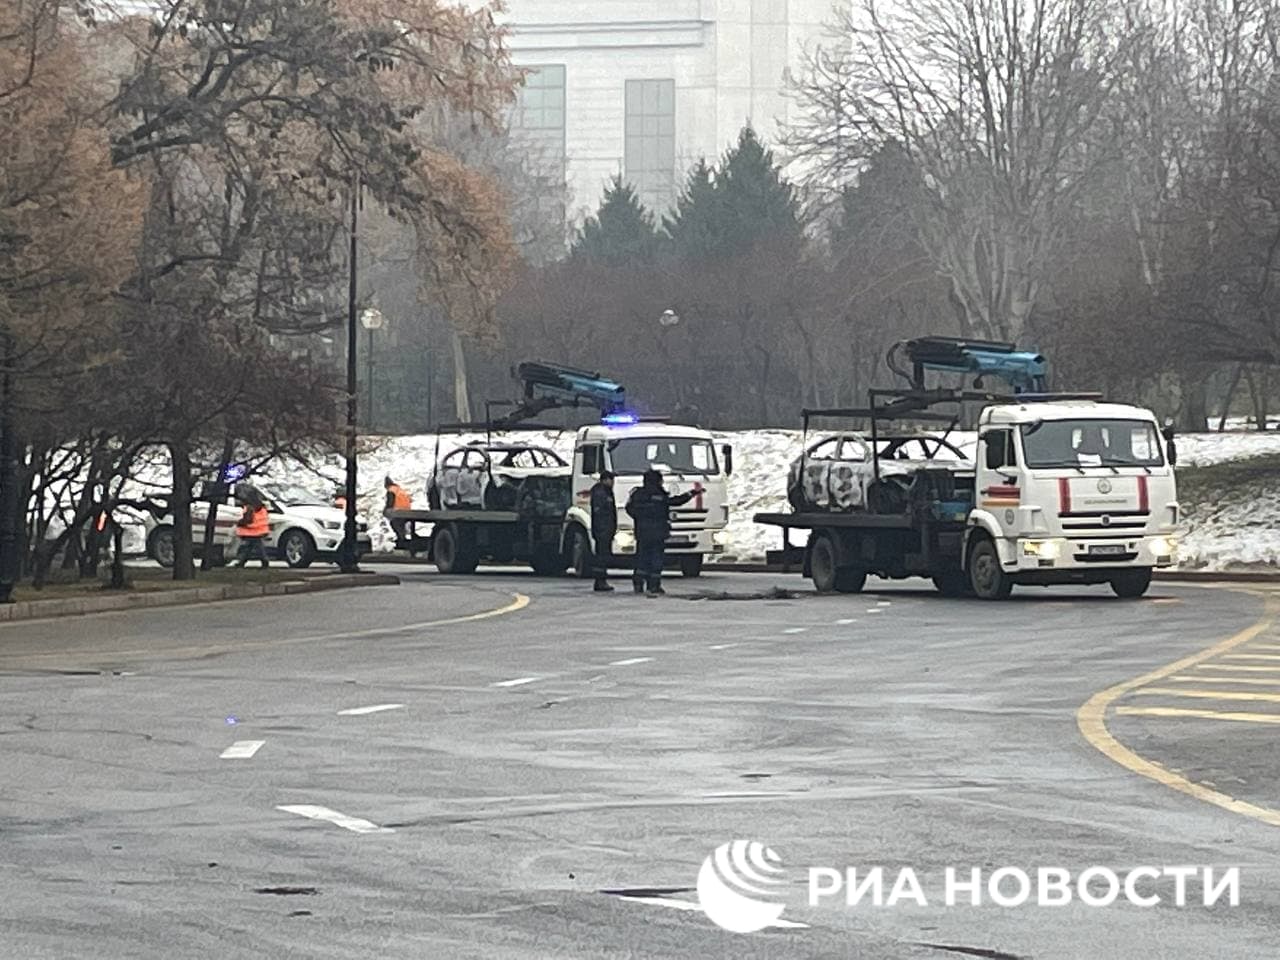 Увозят сожженные полицейские машины. В Казахстане убирают улицы после ночных протестов (фото)